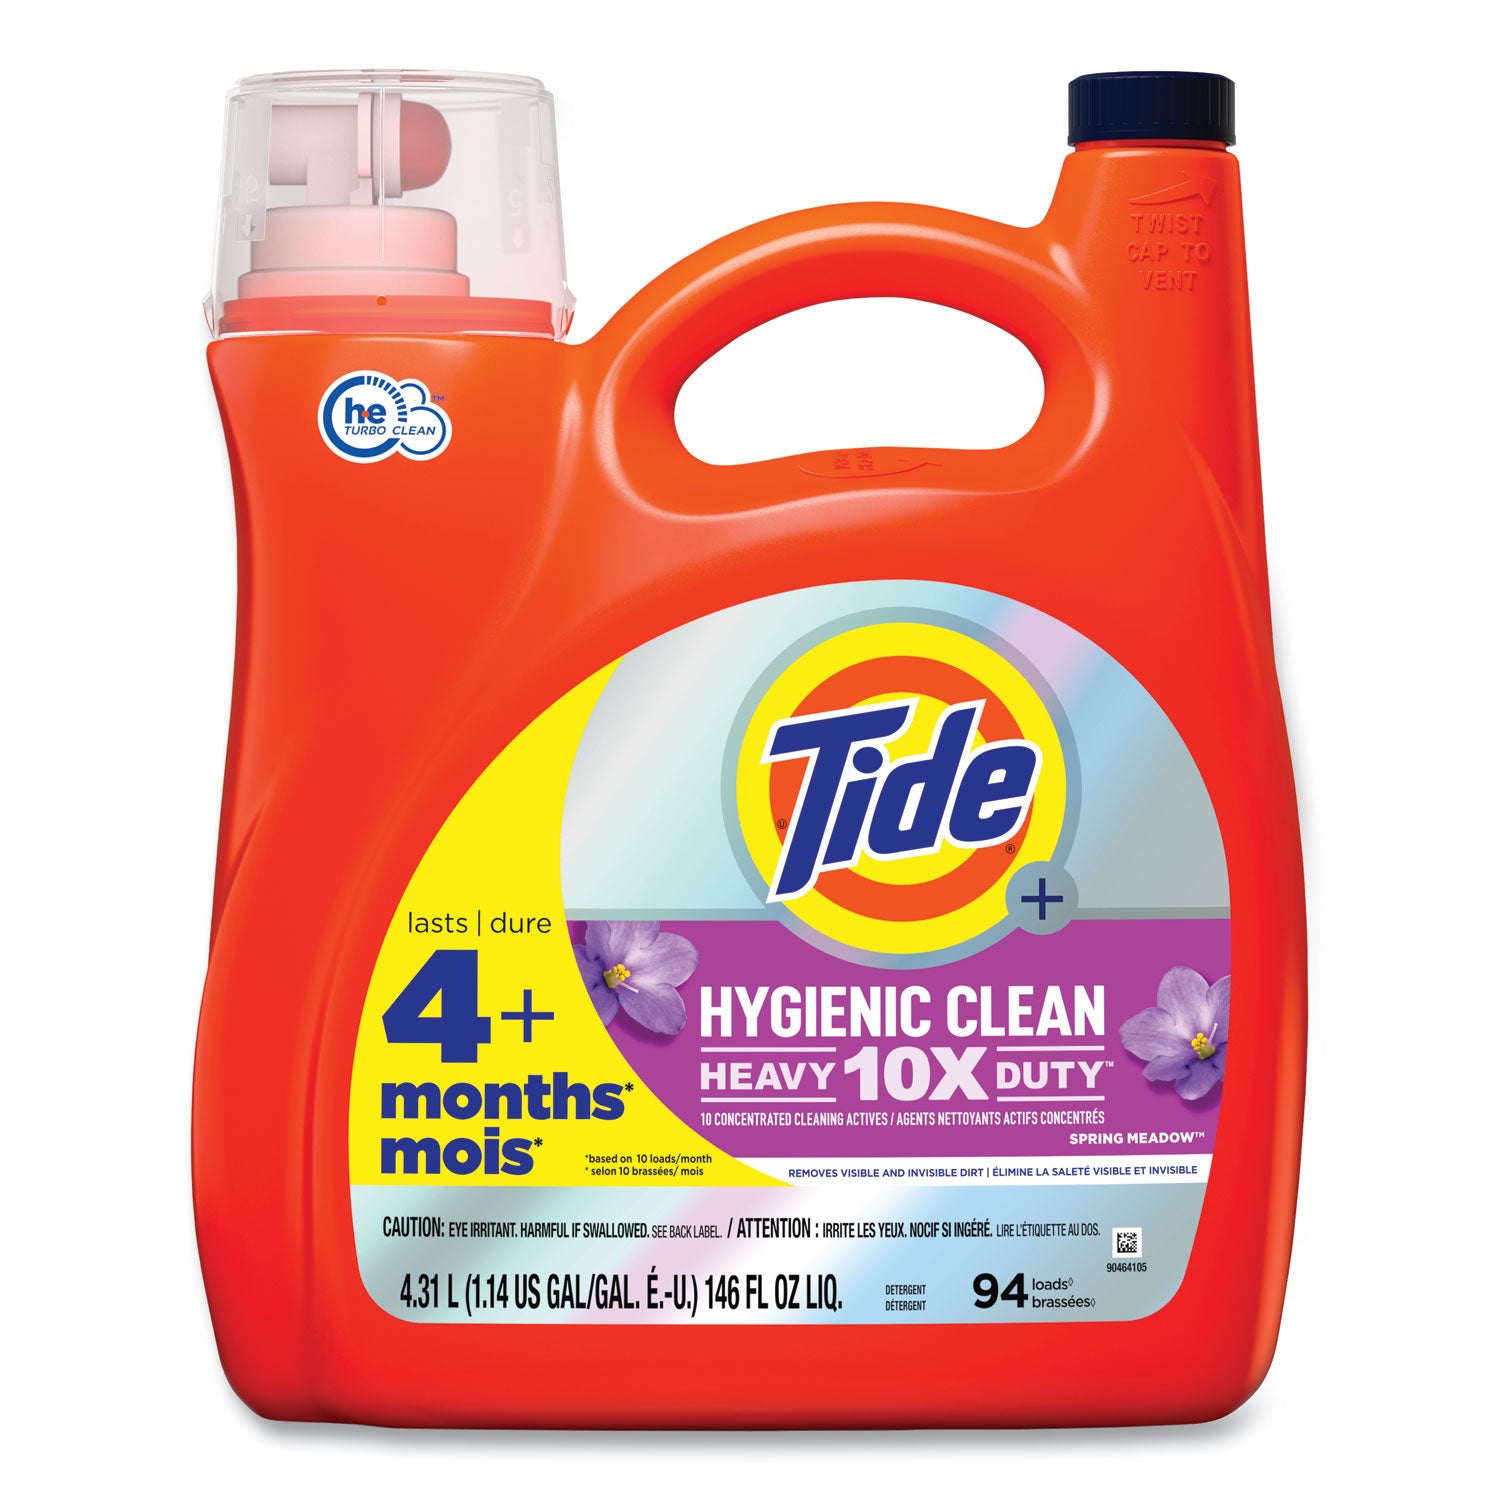 hygienic-clean-heavy-10x-duty-liquid-laundry-detergent-spring-meadow-scent-146-oz-pour-bottle-4-carton_pgc09449 - 1